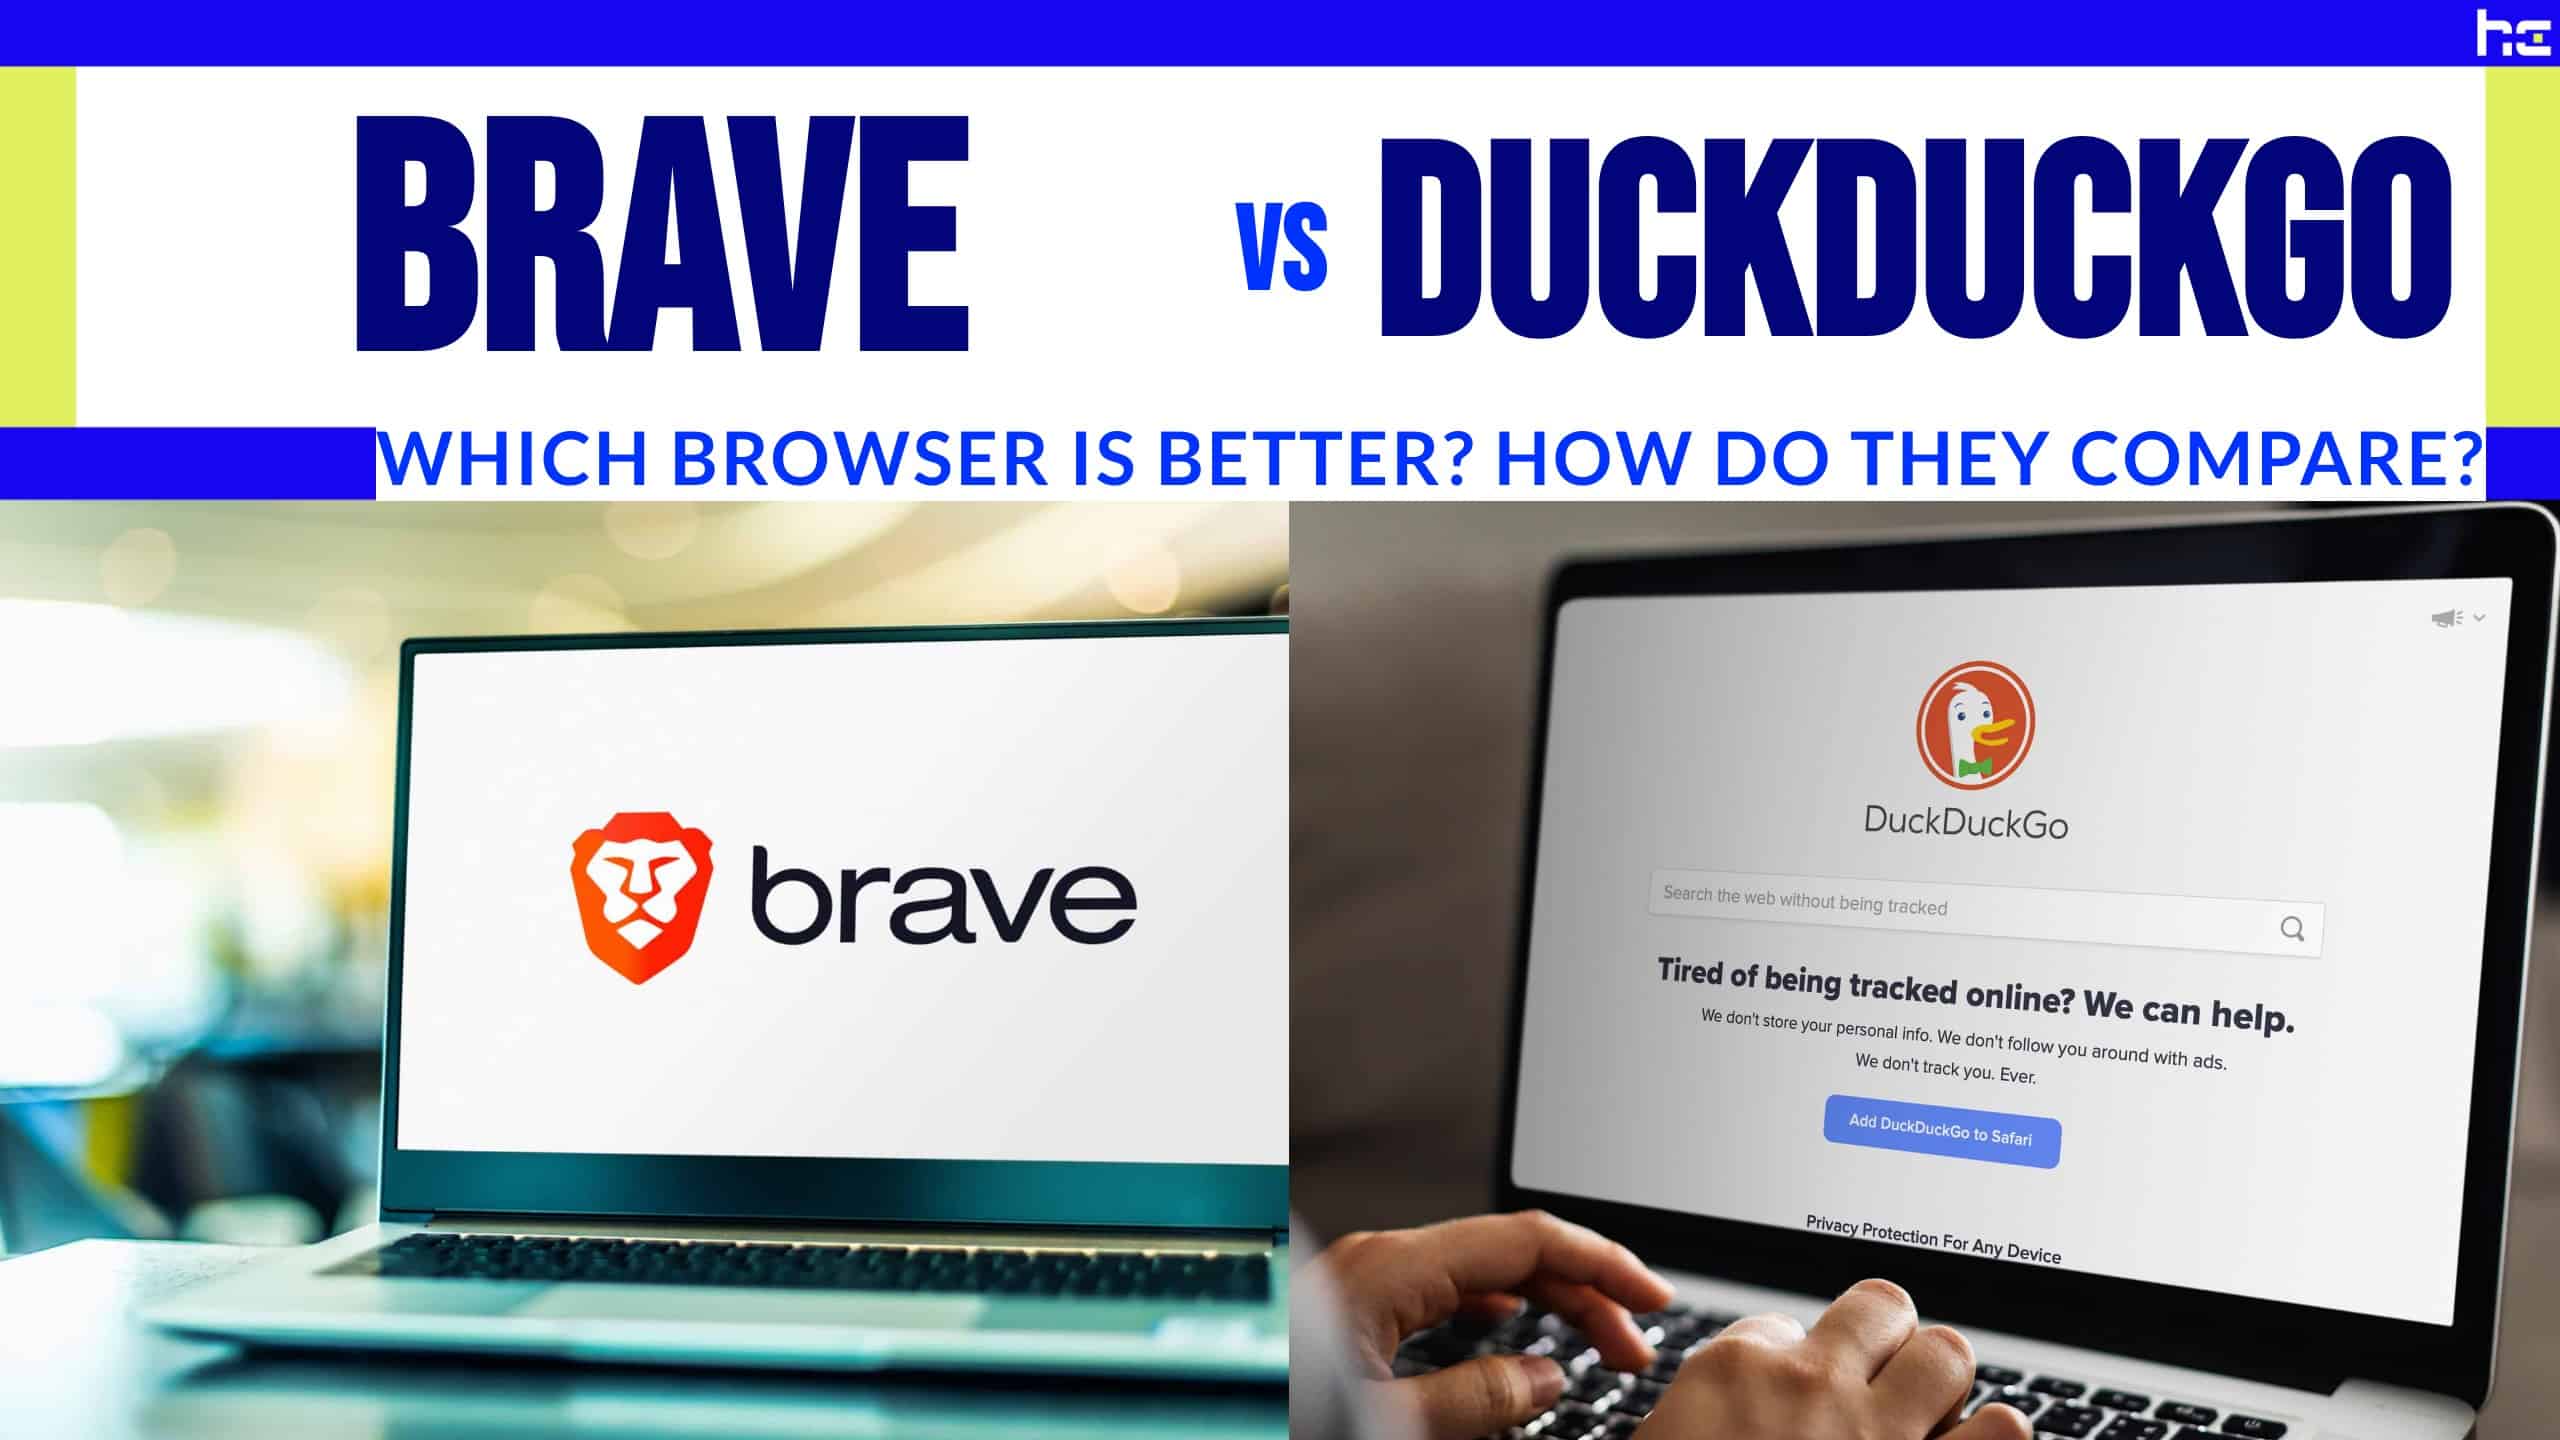 Brave vs DuckDuckGo featured image